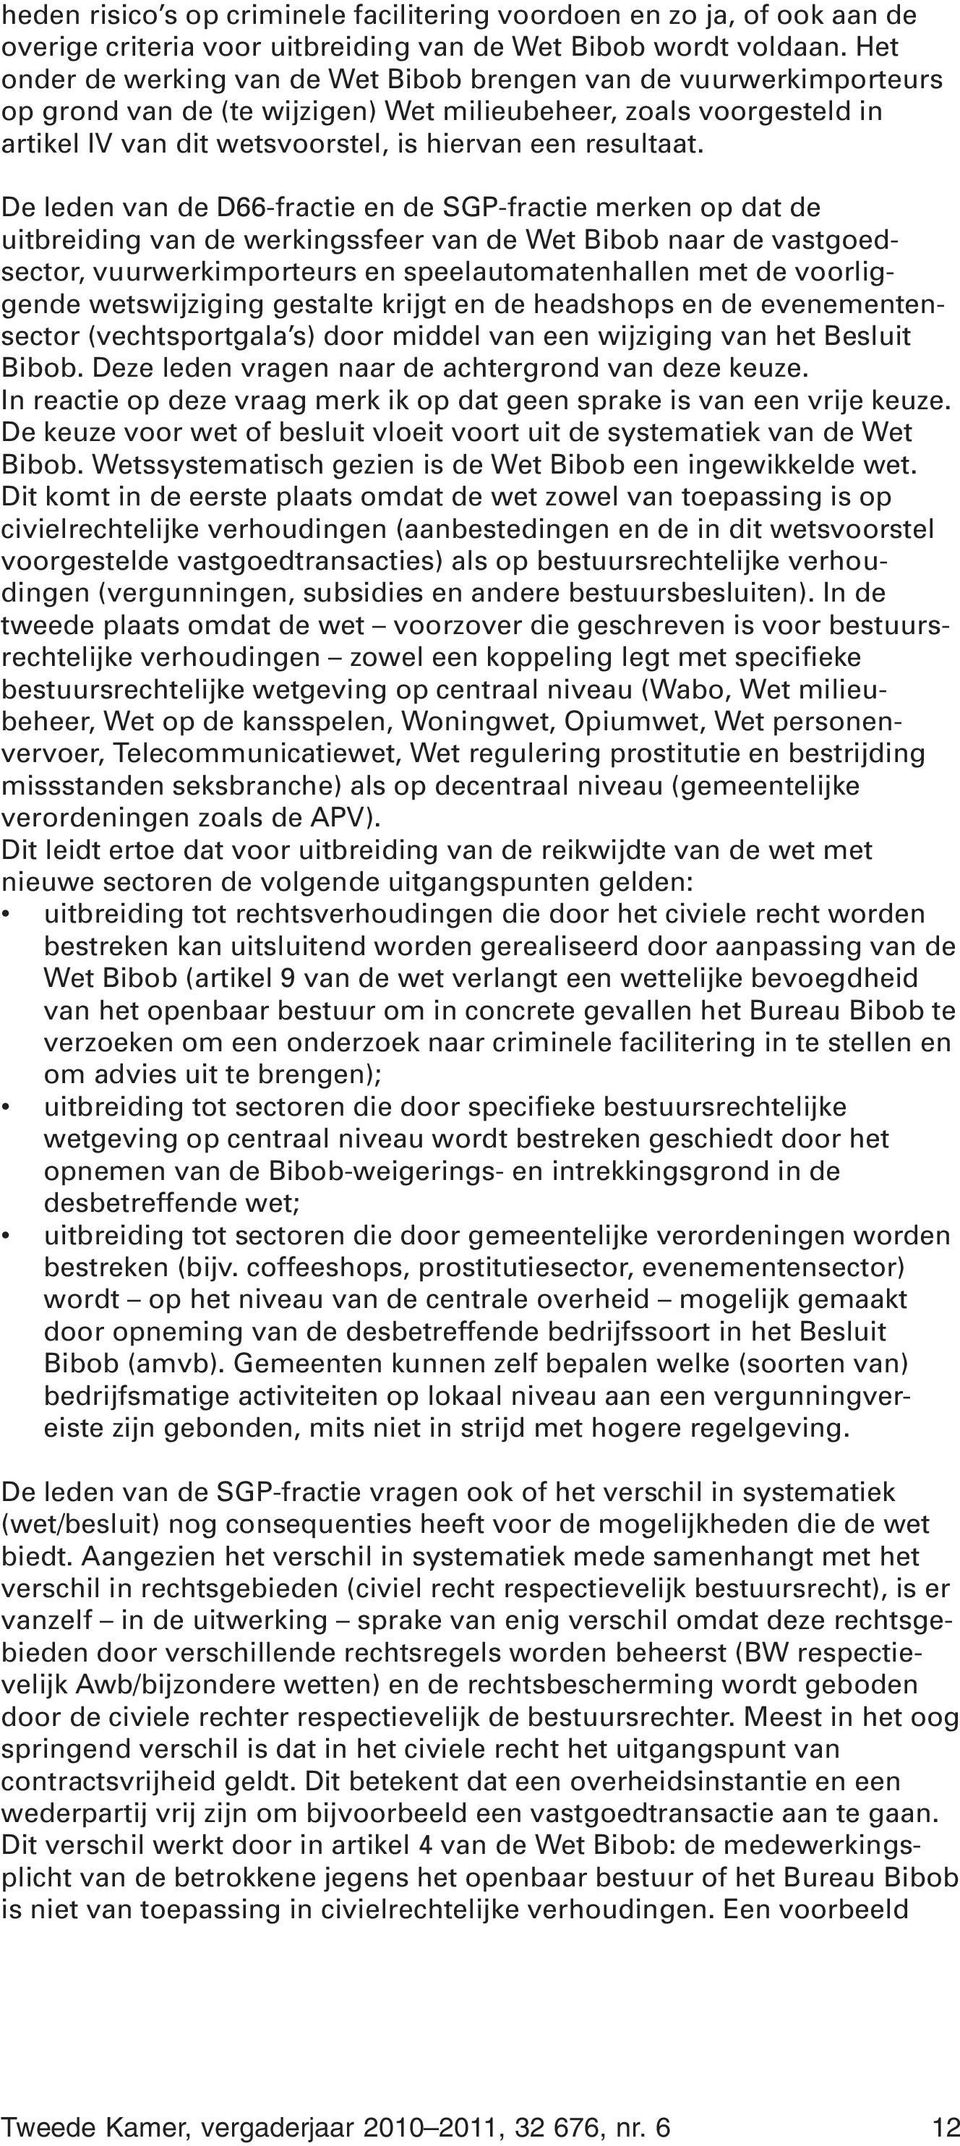 De leden van de D66-fractie en de SGP-fractie merken op dat de uitbreiding van de werkingssfeer van de Wet Bibob naar de vastgoedsector, vuurwerkimporteurs en speelautomatenhallen met de voorliggende